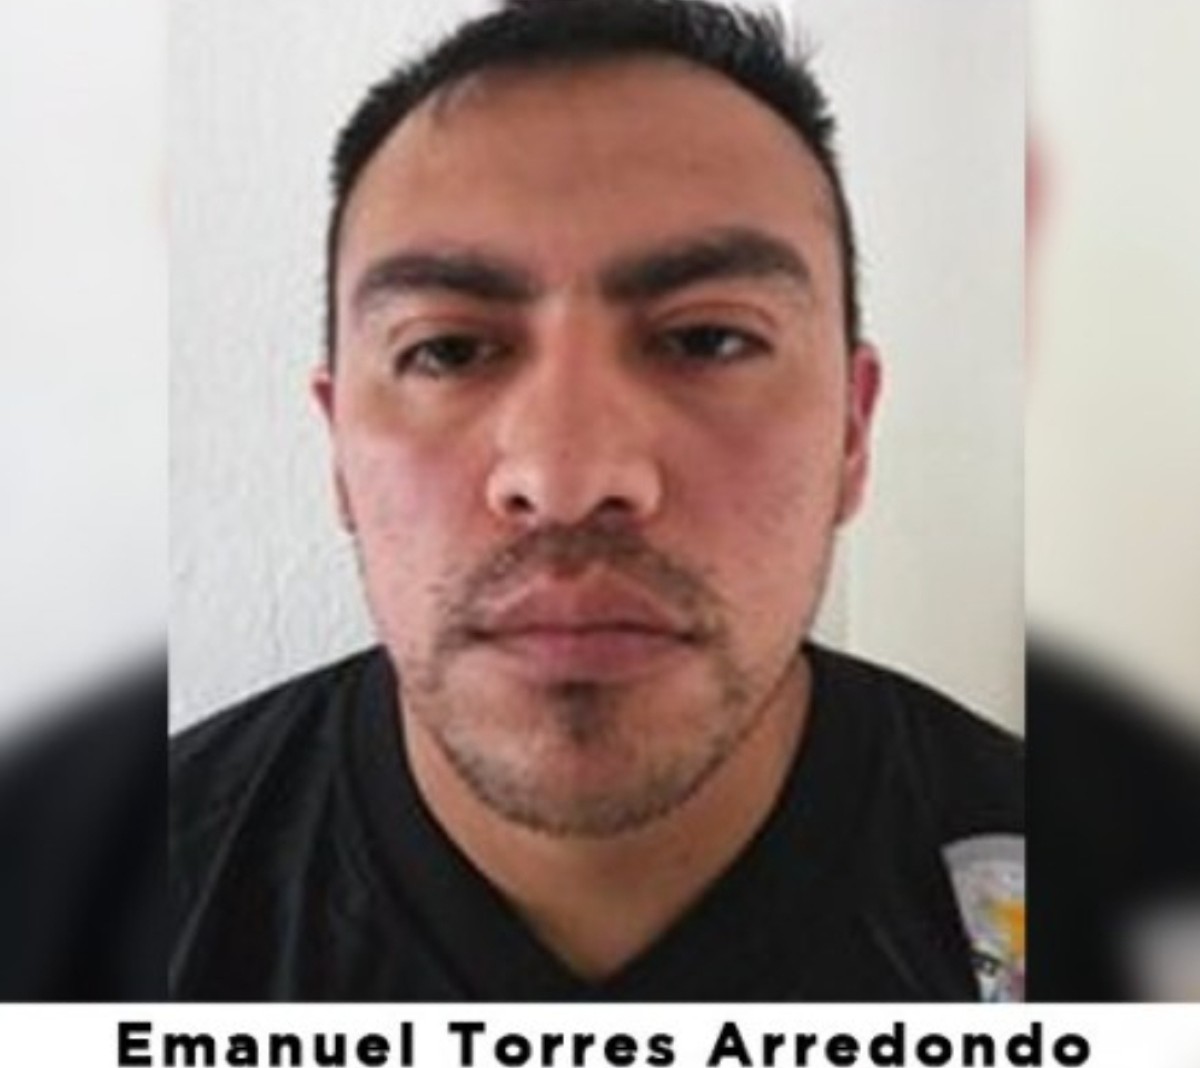 Torres Arredondo supuestamente mató a golpes al niño porque no dejaba de llorar.